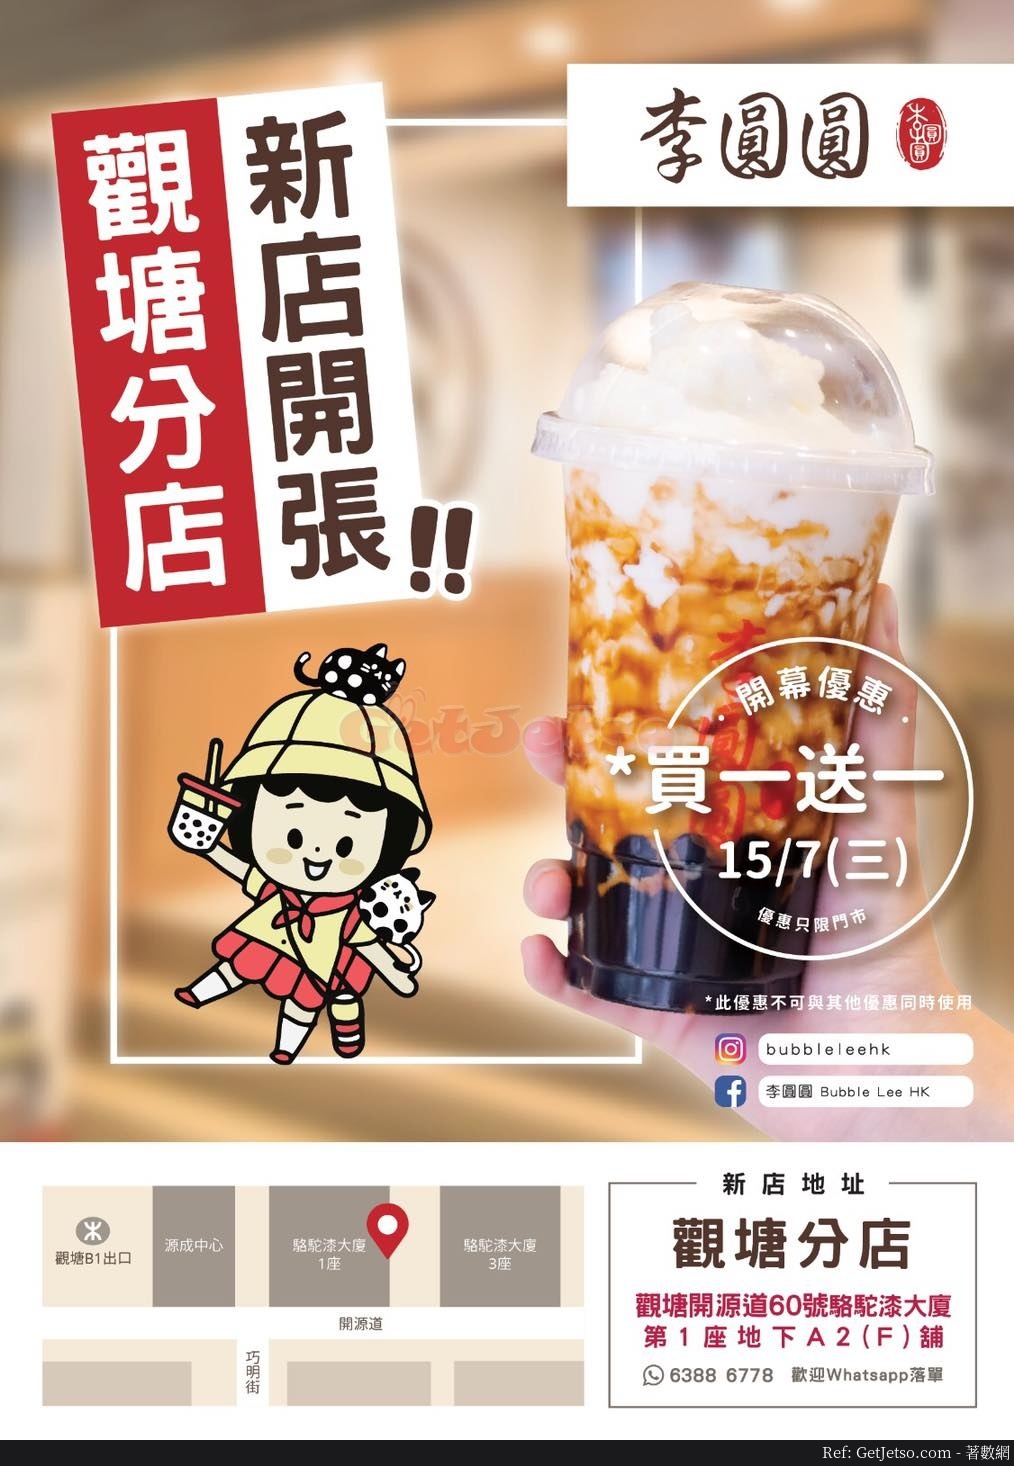 李圓圓黑糖珍珠鮮奶買1送1優惠@觀塘店(20年7月15日)圖片1